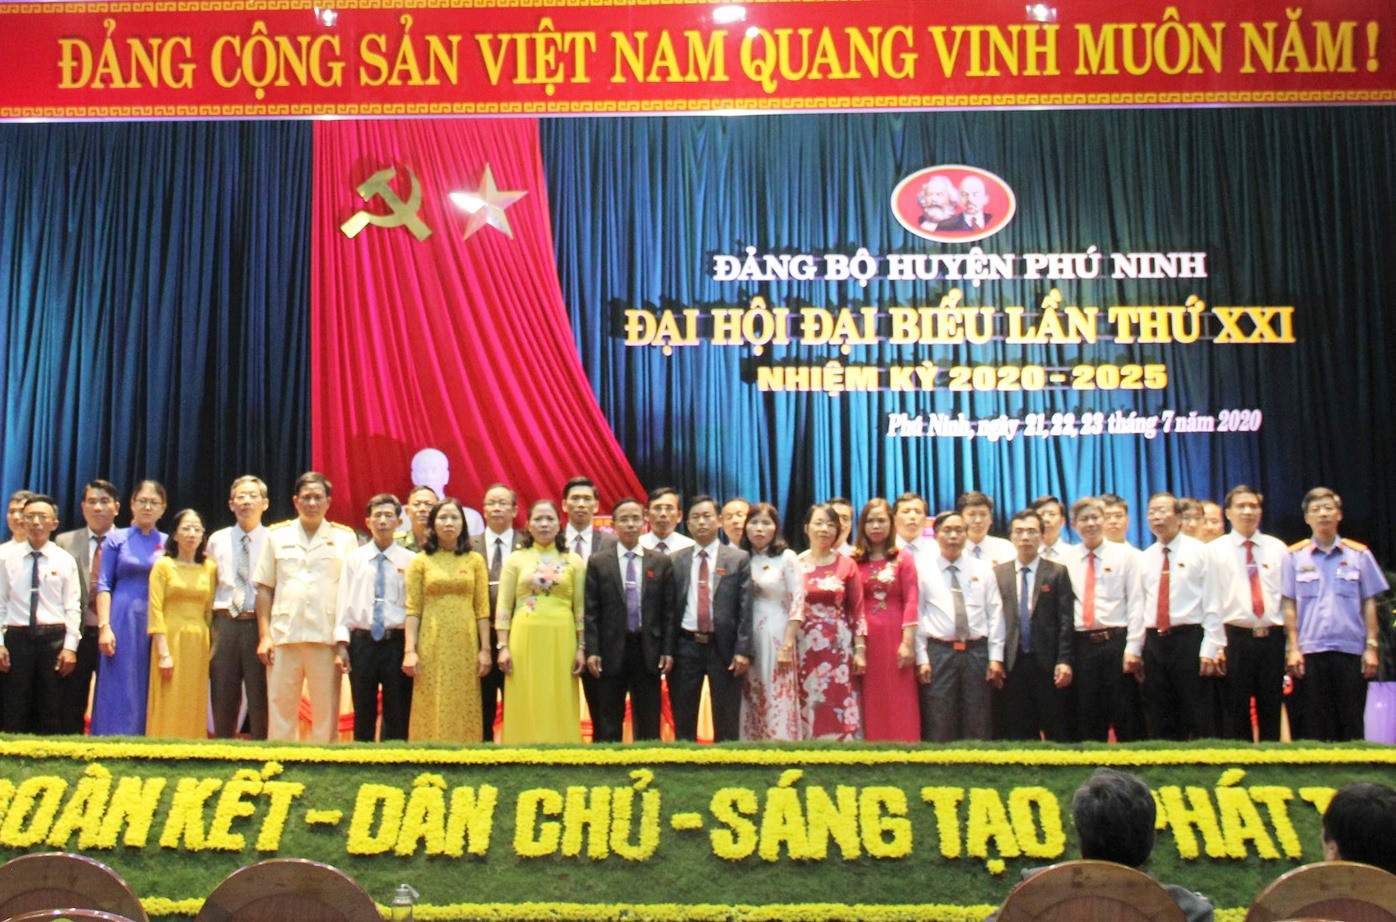 39 đồng chí vừa được bầu vào Ban Chấp hành Đảng bộ huyện Phú Ninh khóa XXI (nhiệm kỳ 2020 - 2025). Ảnh: VINH ANH